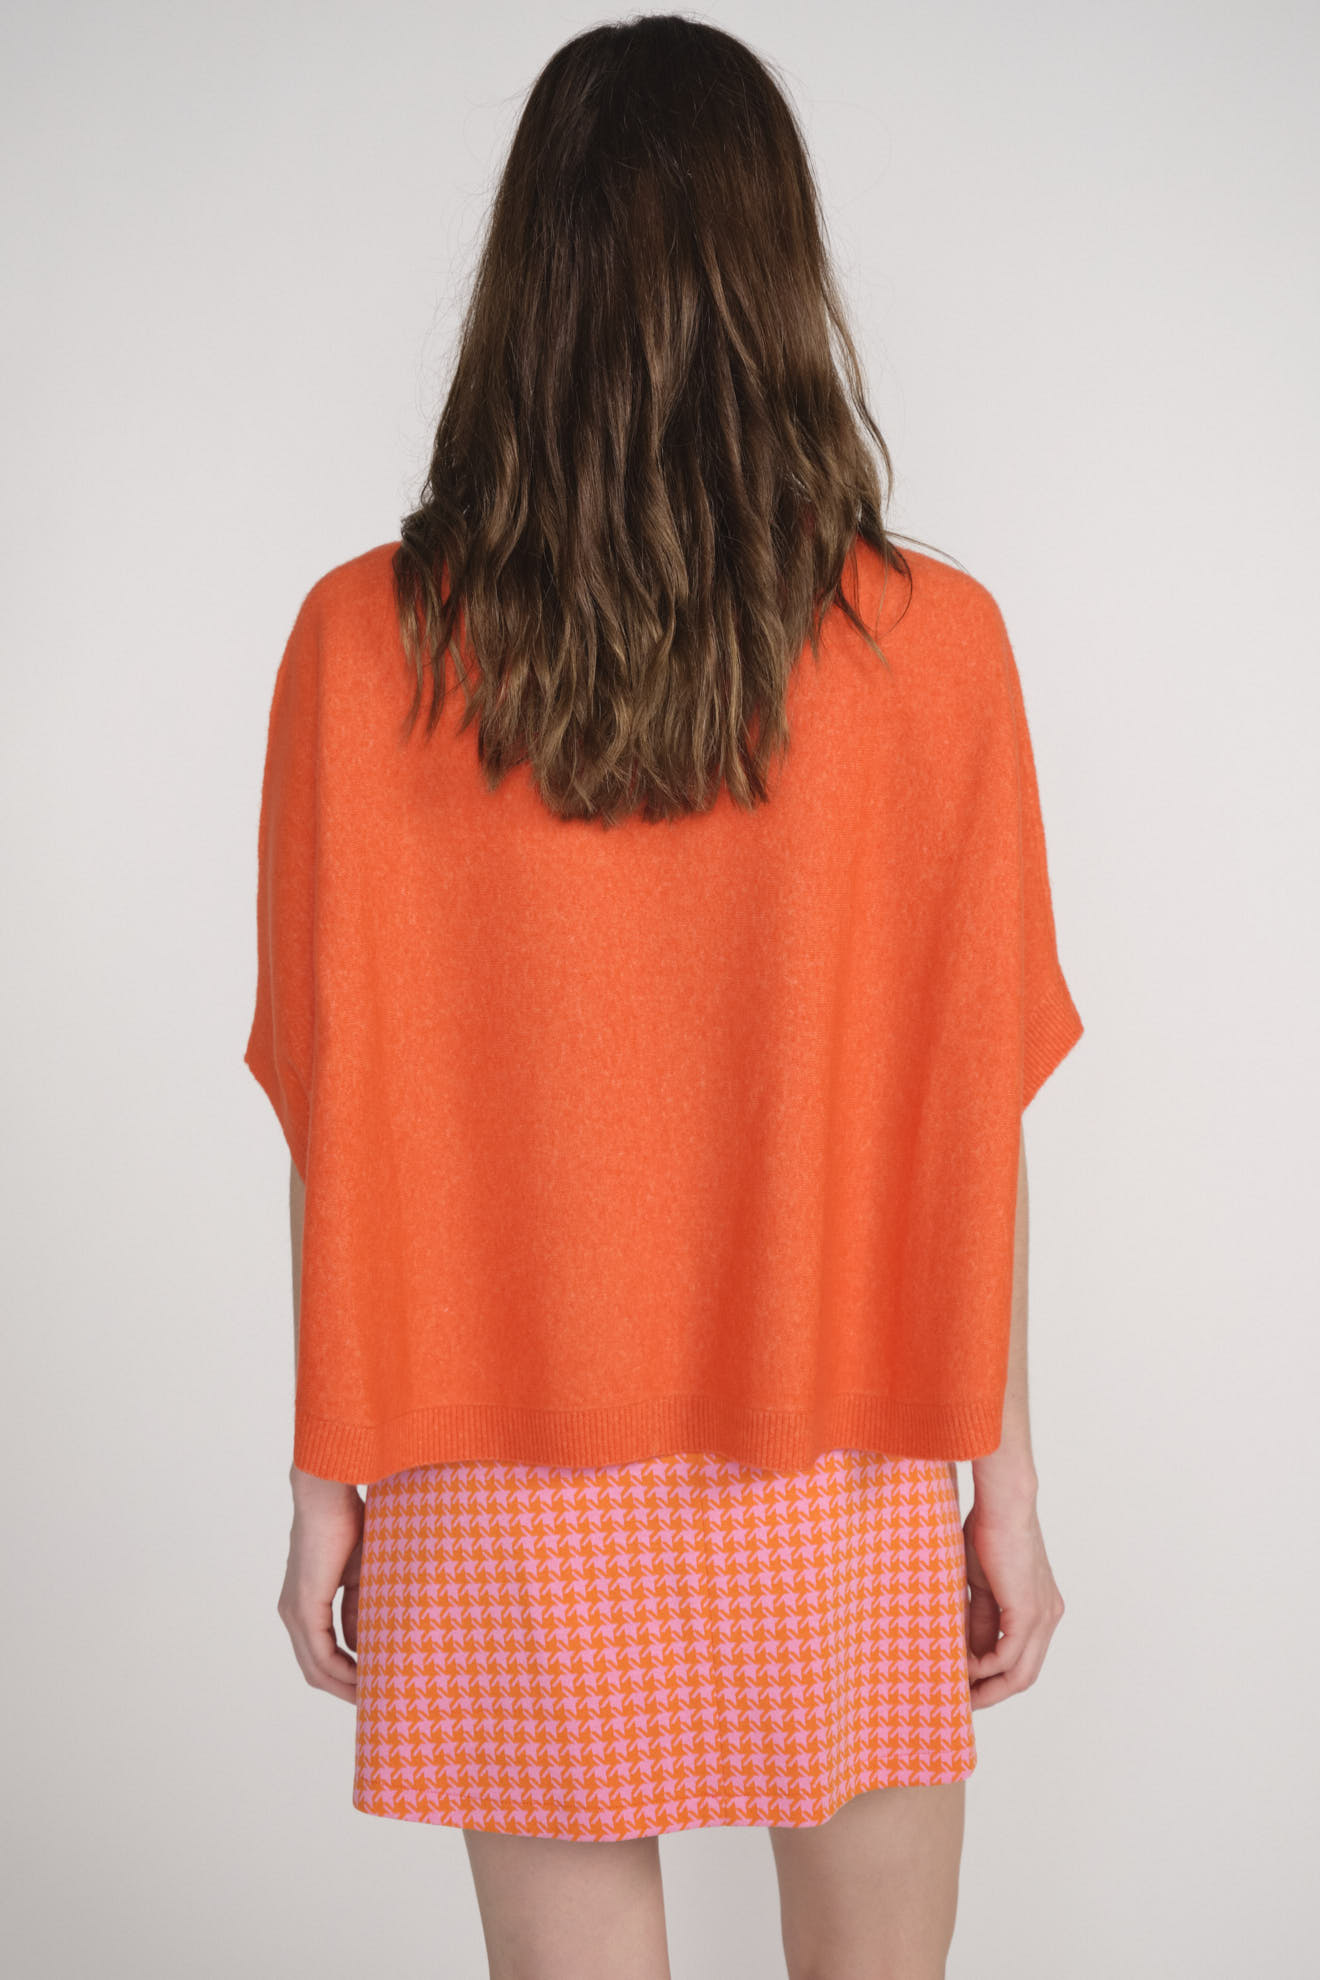 Darby - Maglia a mantella in cashmere arancione S